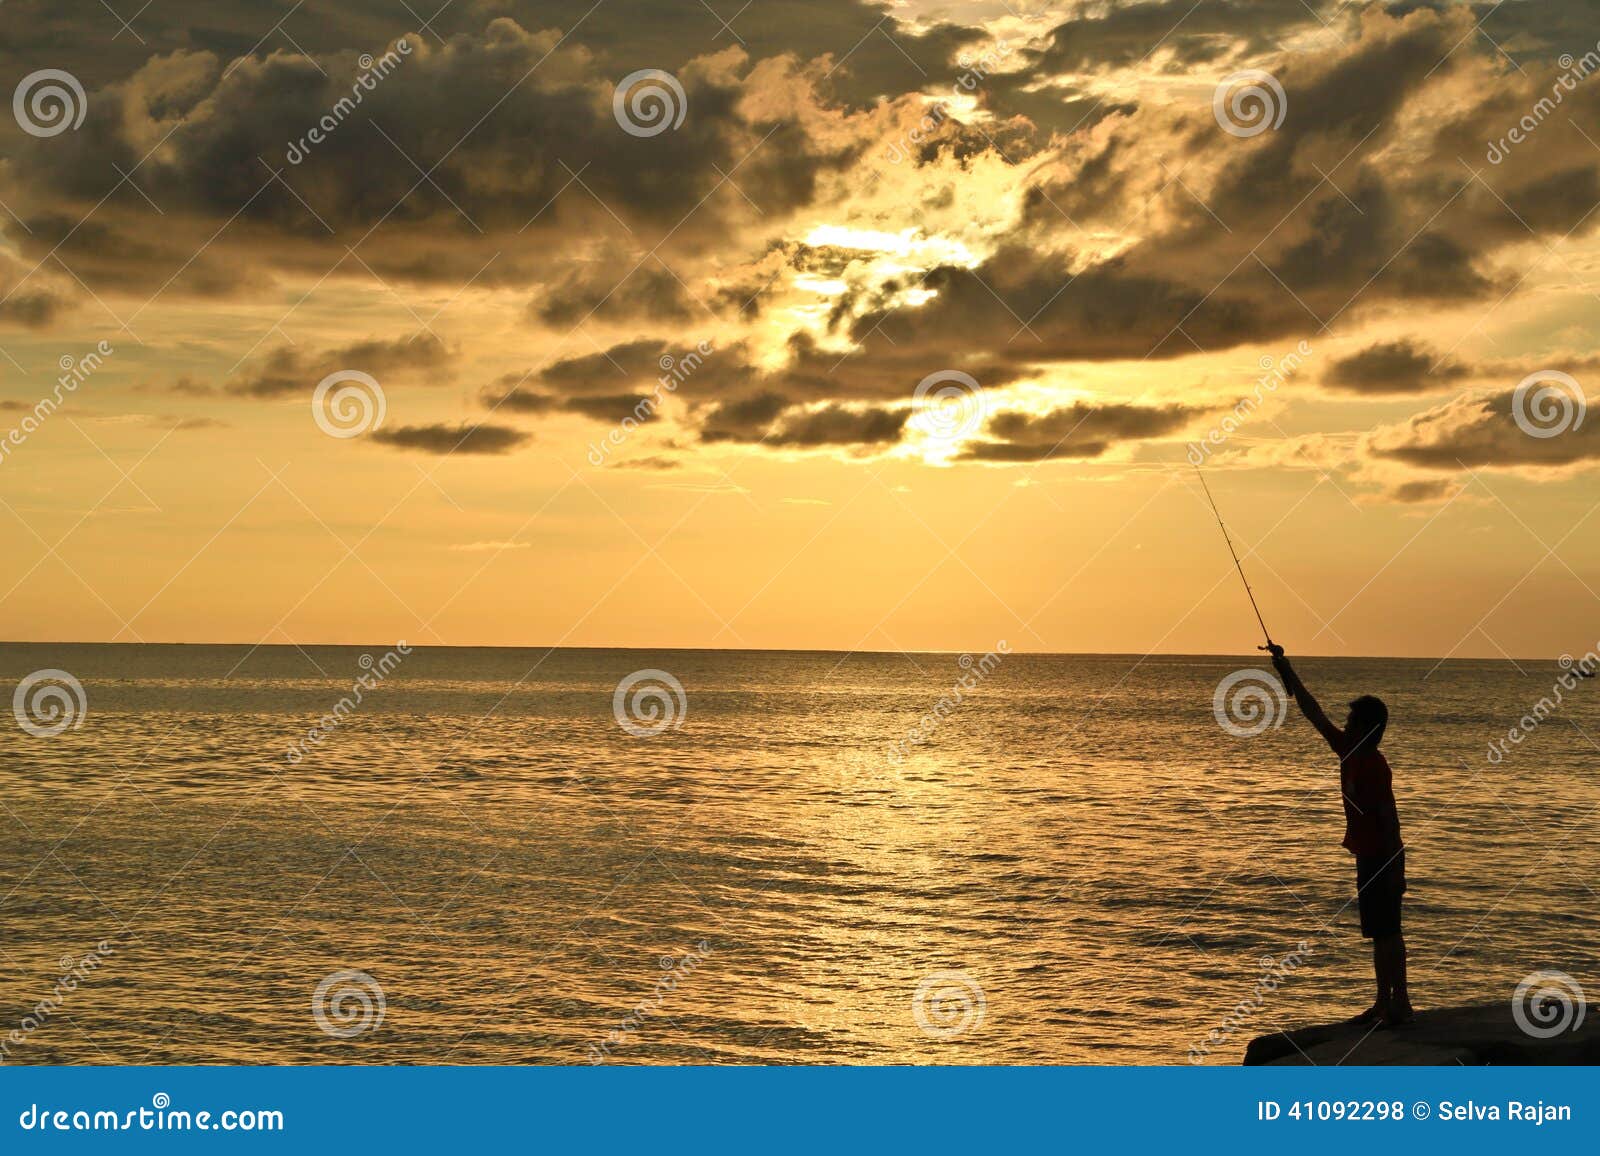 Ein Mannfischen während des Sonnenuntergangs. Ein Schattenbild eines Mannfischens mit einem schönen, goldenen Sonnenuntergang und einem orange Himmel als Hintergrund